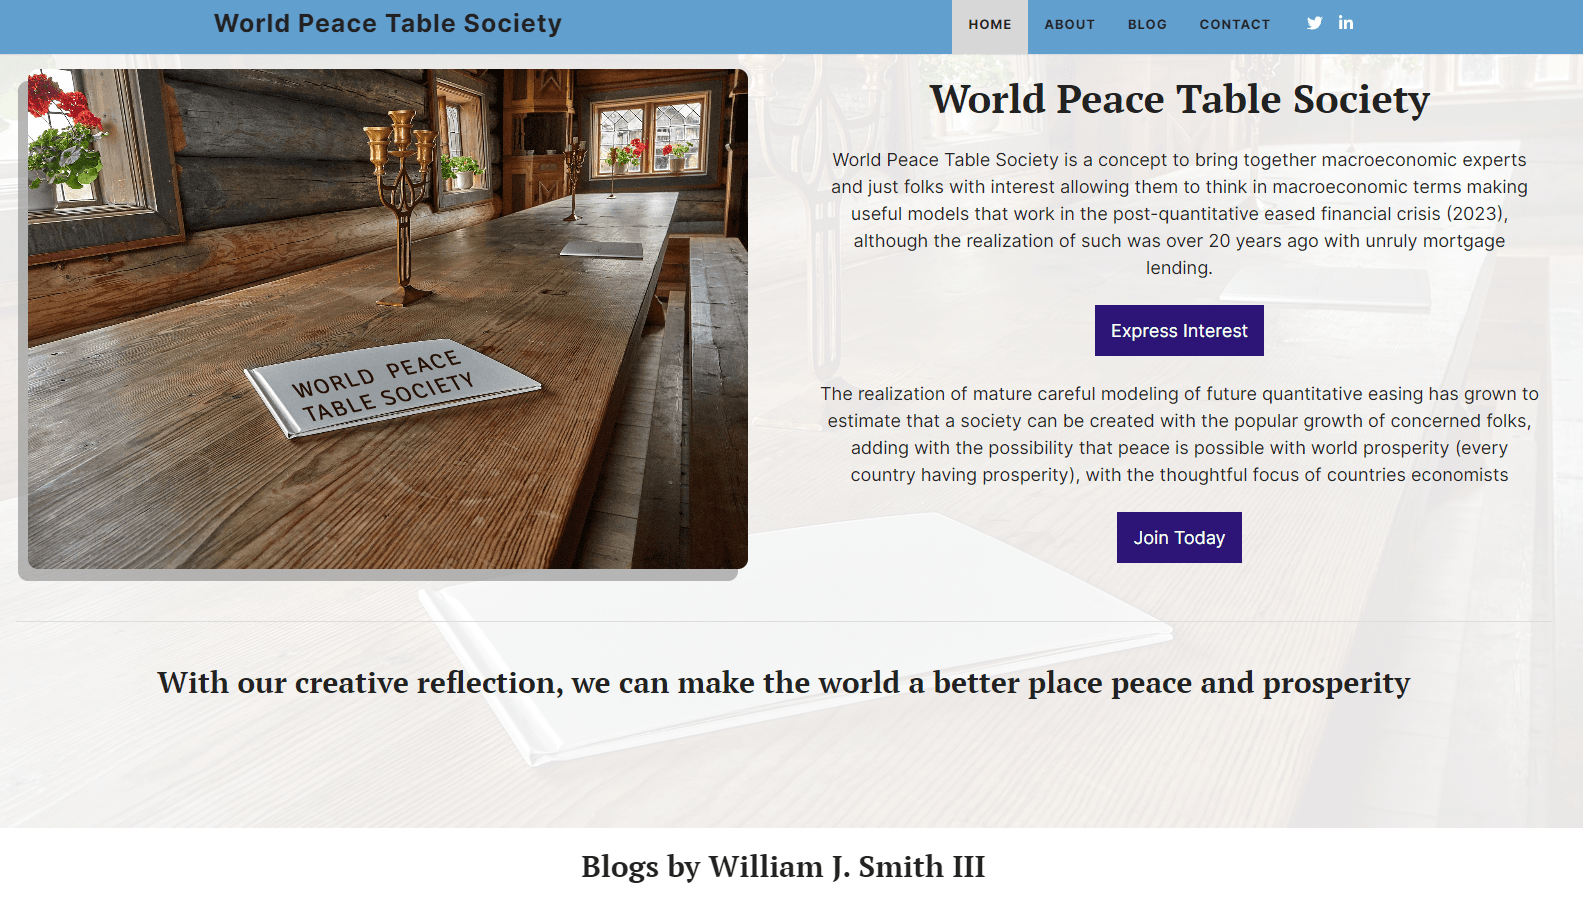 World Peace Table Society